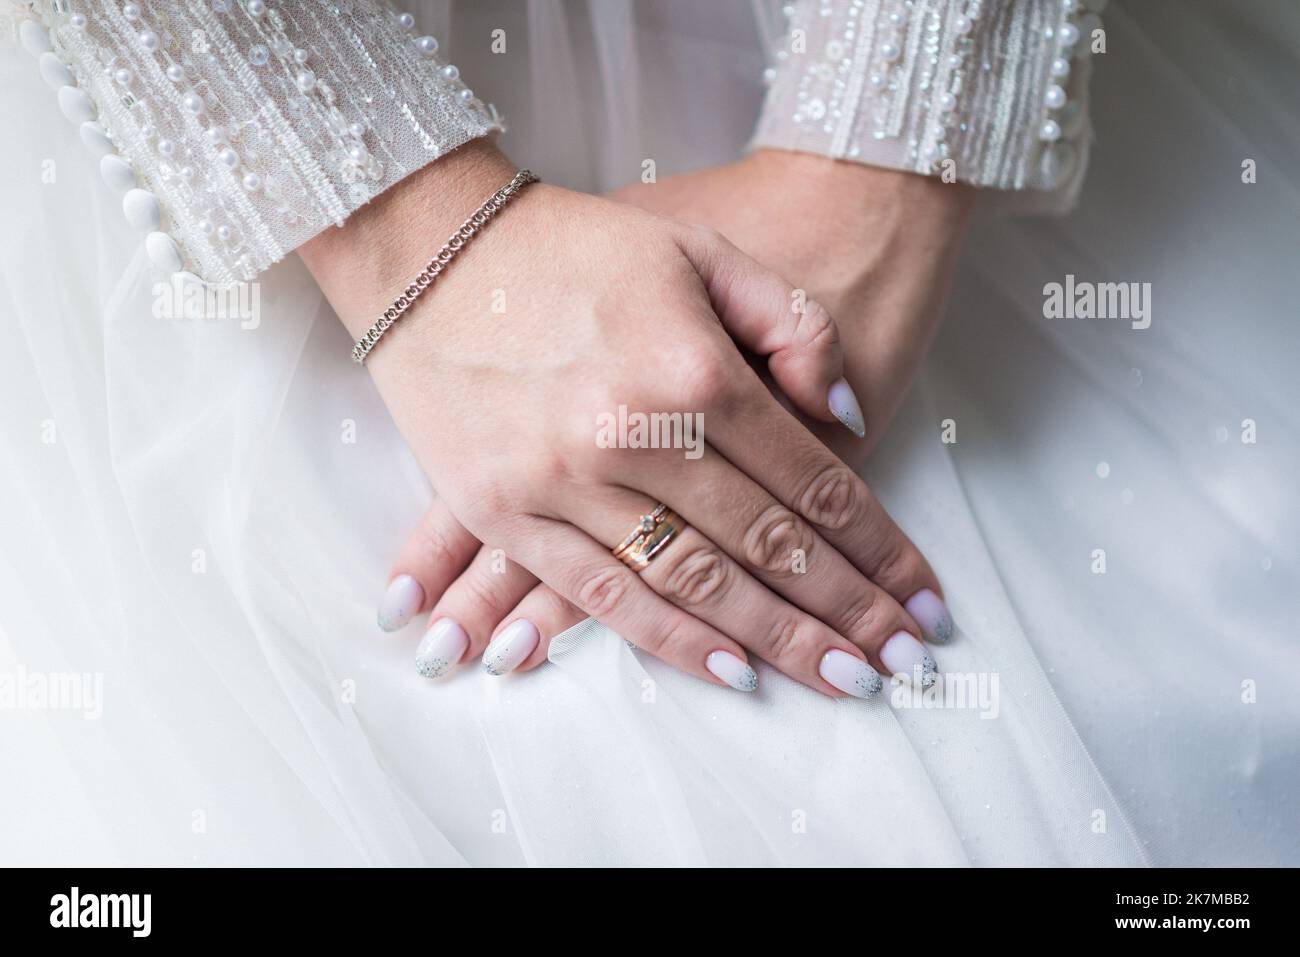 Bild von Mann und Frau mit Ehering.Junges Ehepaar hält Hände, Zeremonie Hochzeitstag. Vermählte die Hände des Paares mit Eheringen. Stockfoto